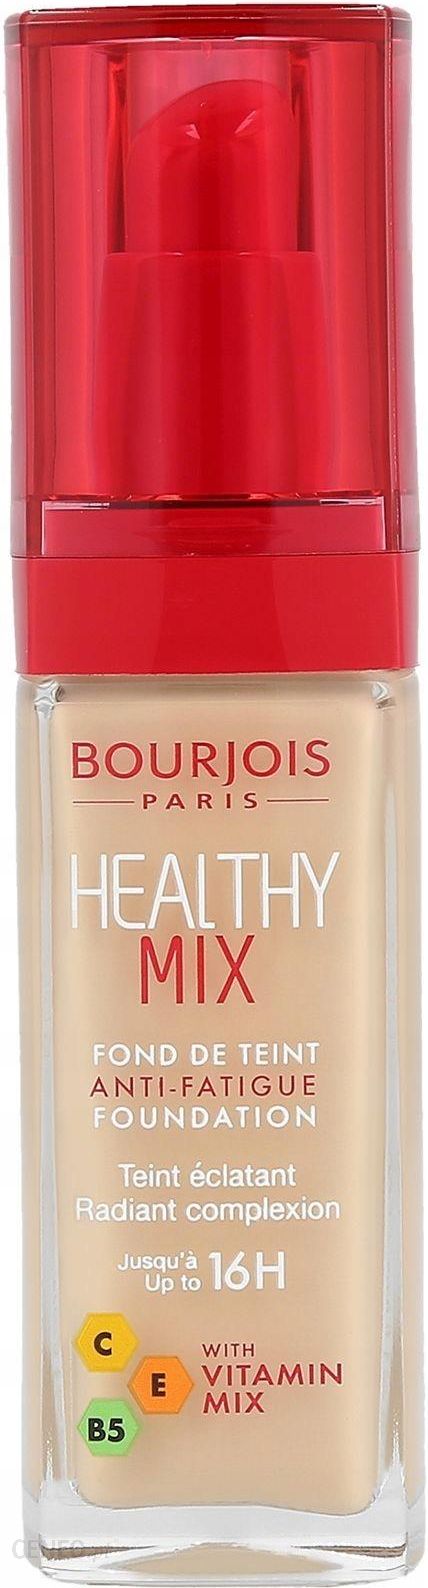 Bourjois Healthy Mix Foundation Podkład Rozświetlający 54 Beige 30ml